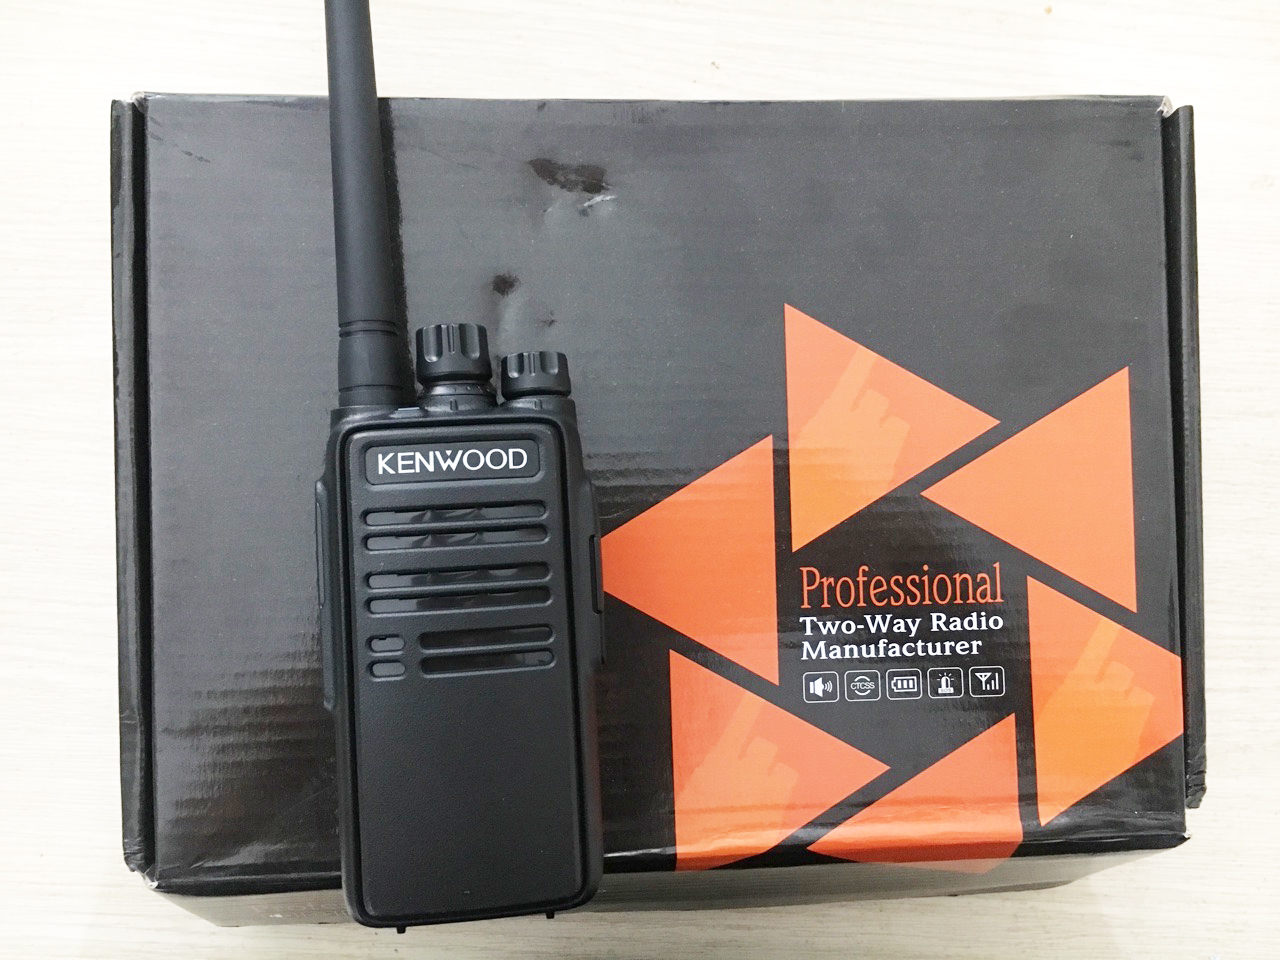  Với Kenwood TK 3508 liên lạc ổn định, không bị gián đoạn trong quá trình đàm thoại